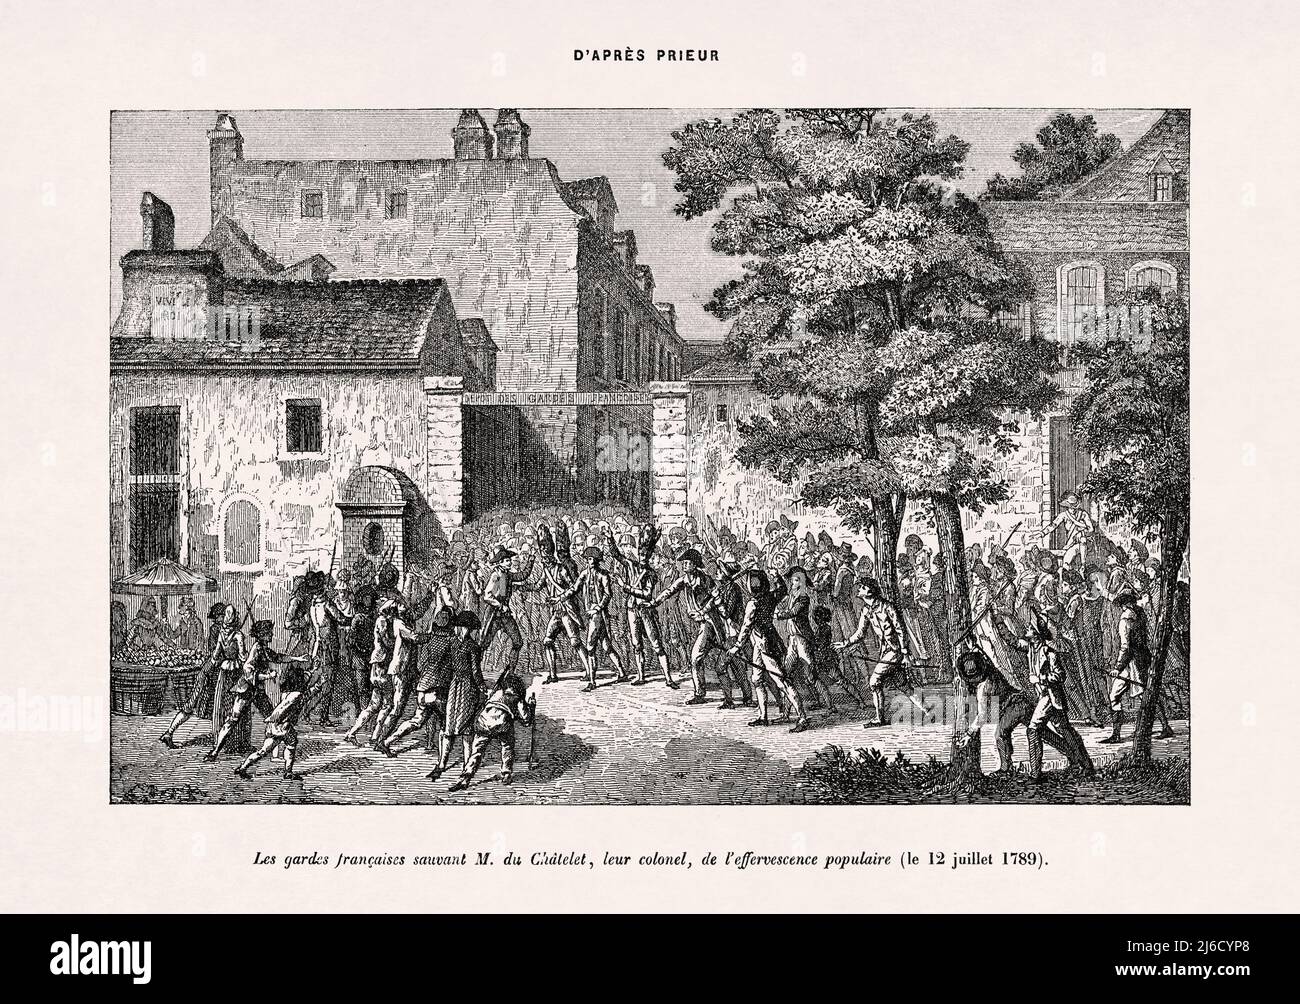 Alte Illustration über die französische Revolution von Prieur, gedruckt 1899 in einem französischen Wörterbuch. Stockfoto